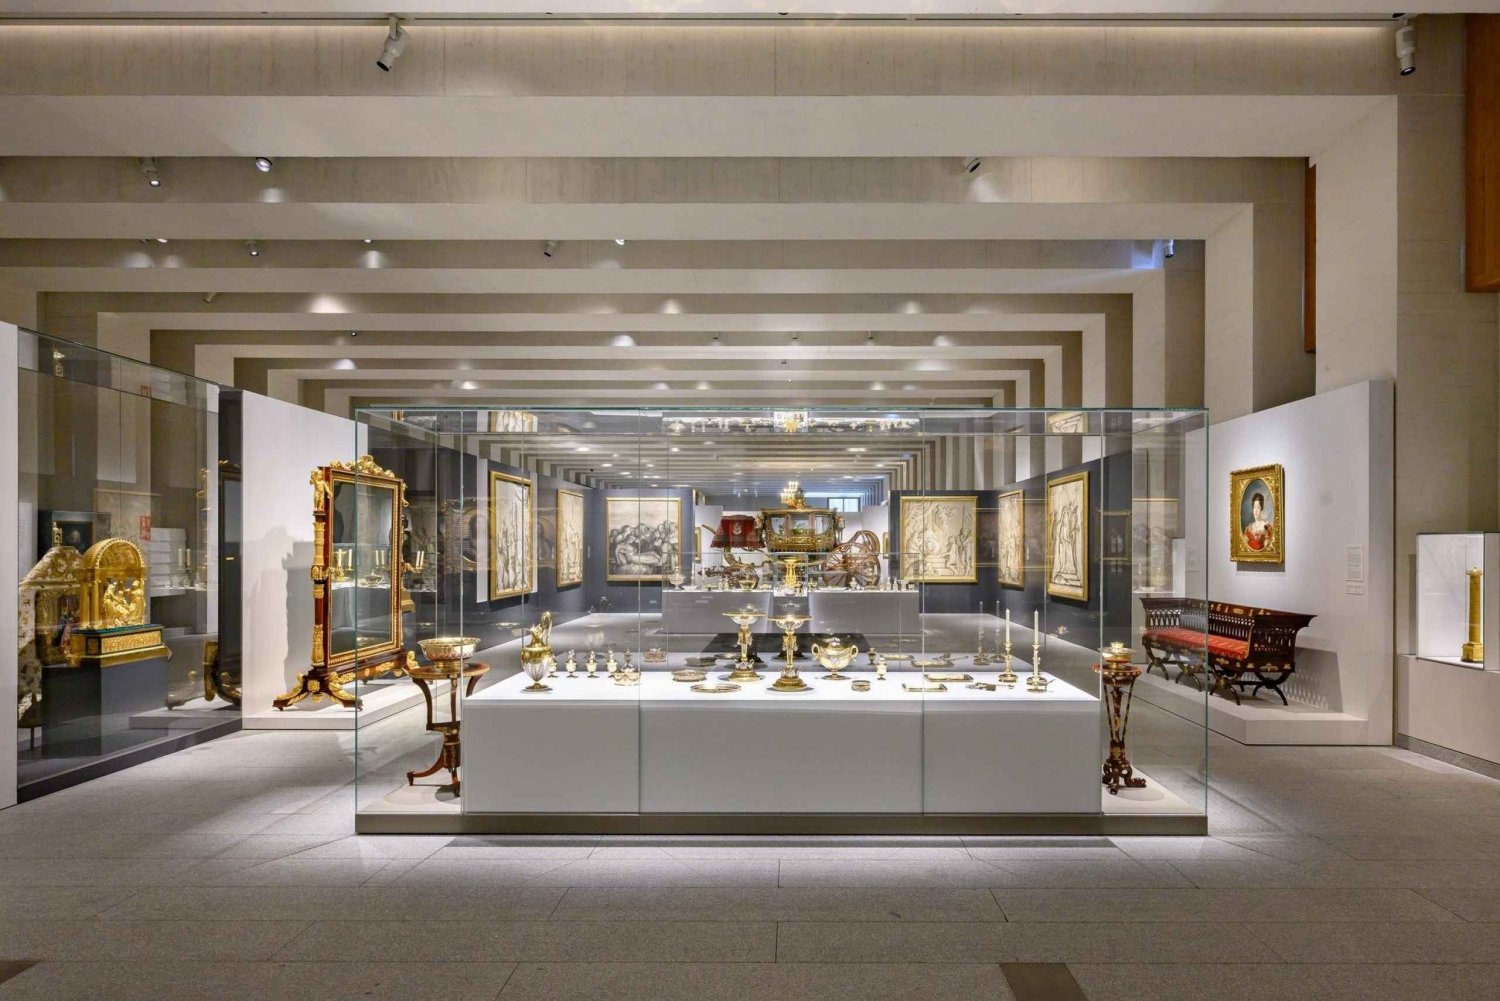 Madrid: Galeria de las Colecciones Reales and Royal Palace